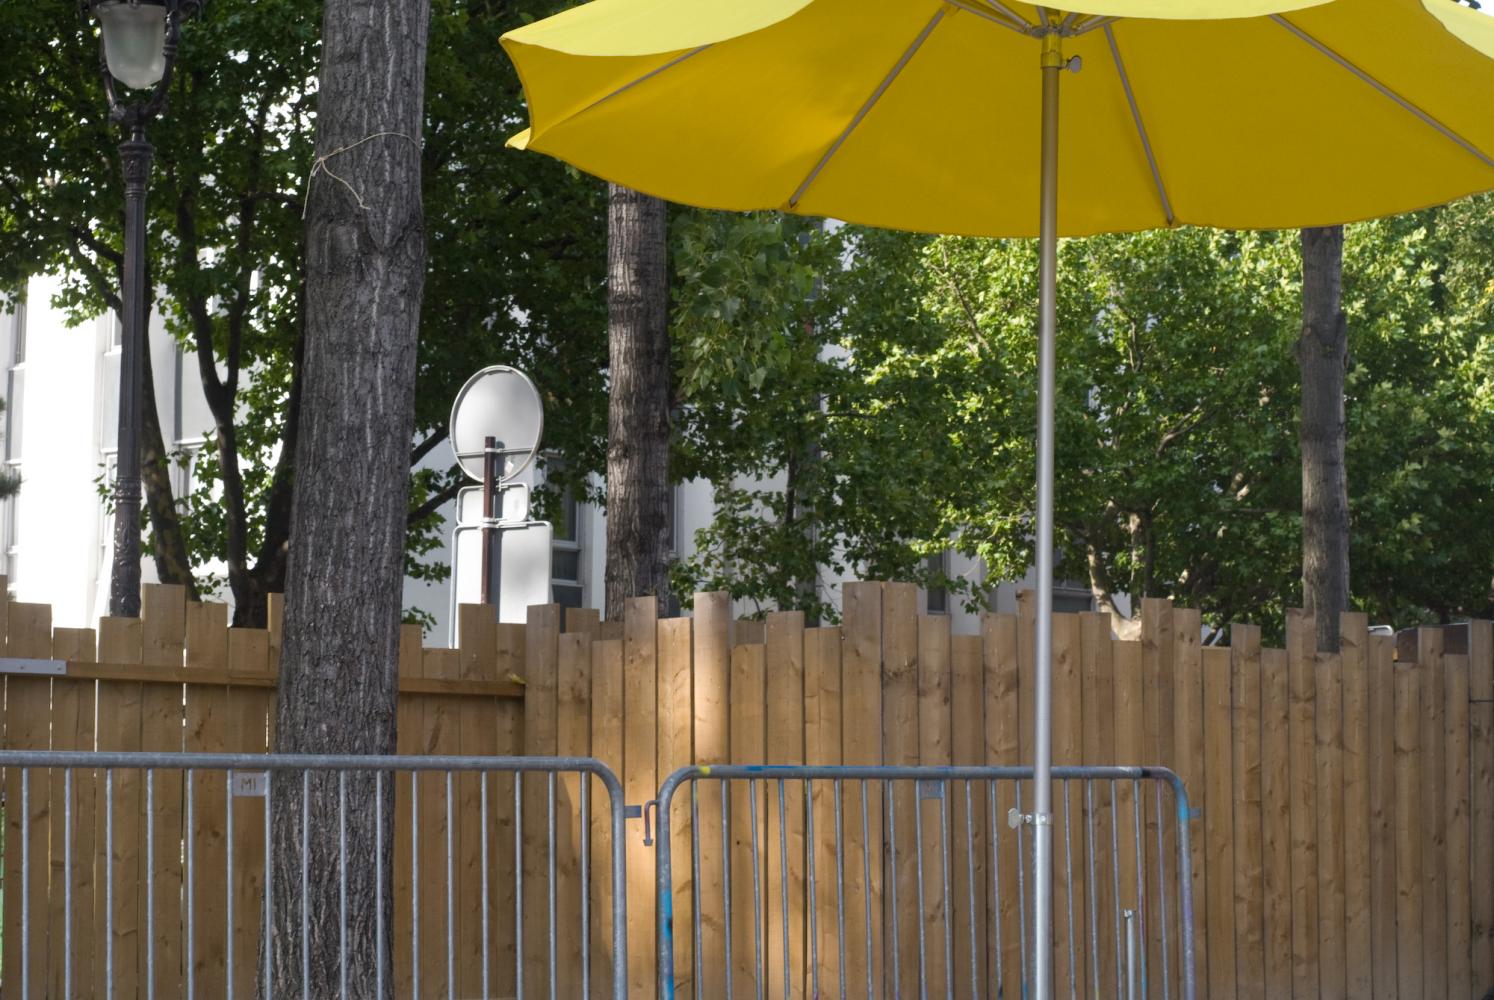 Un parasol jaune, des barrières métalliques, et derrière, une palissade se faufile entre les arbres. Paris, août 2010.